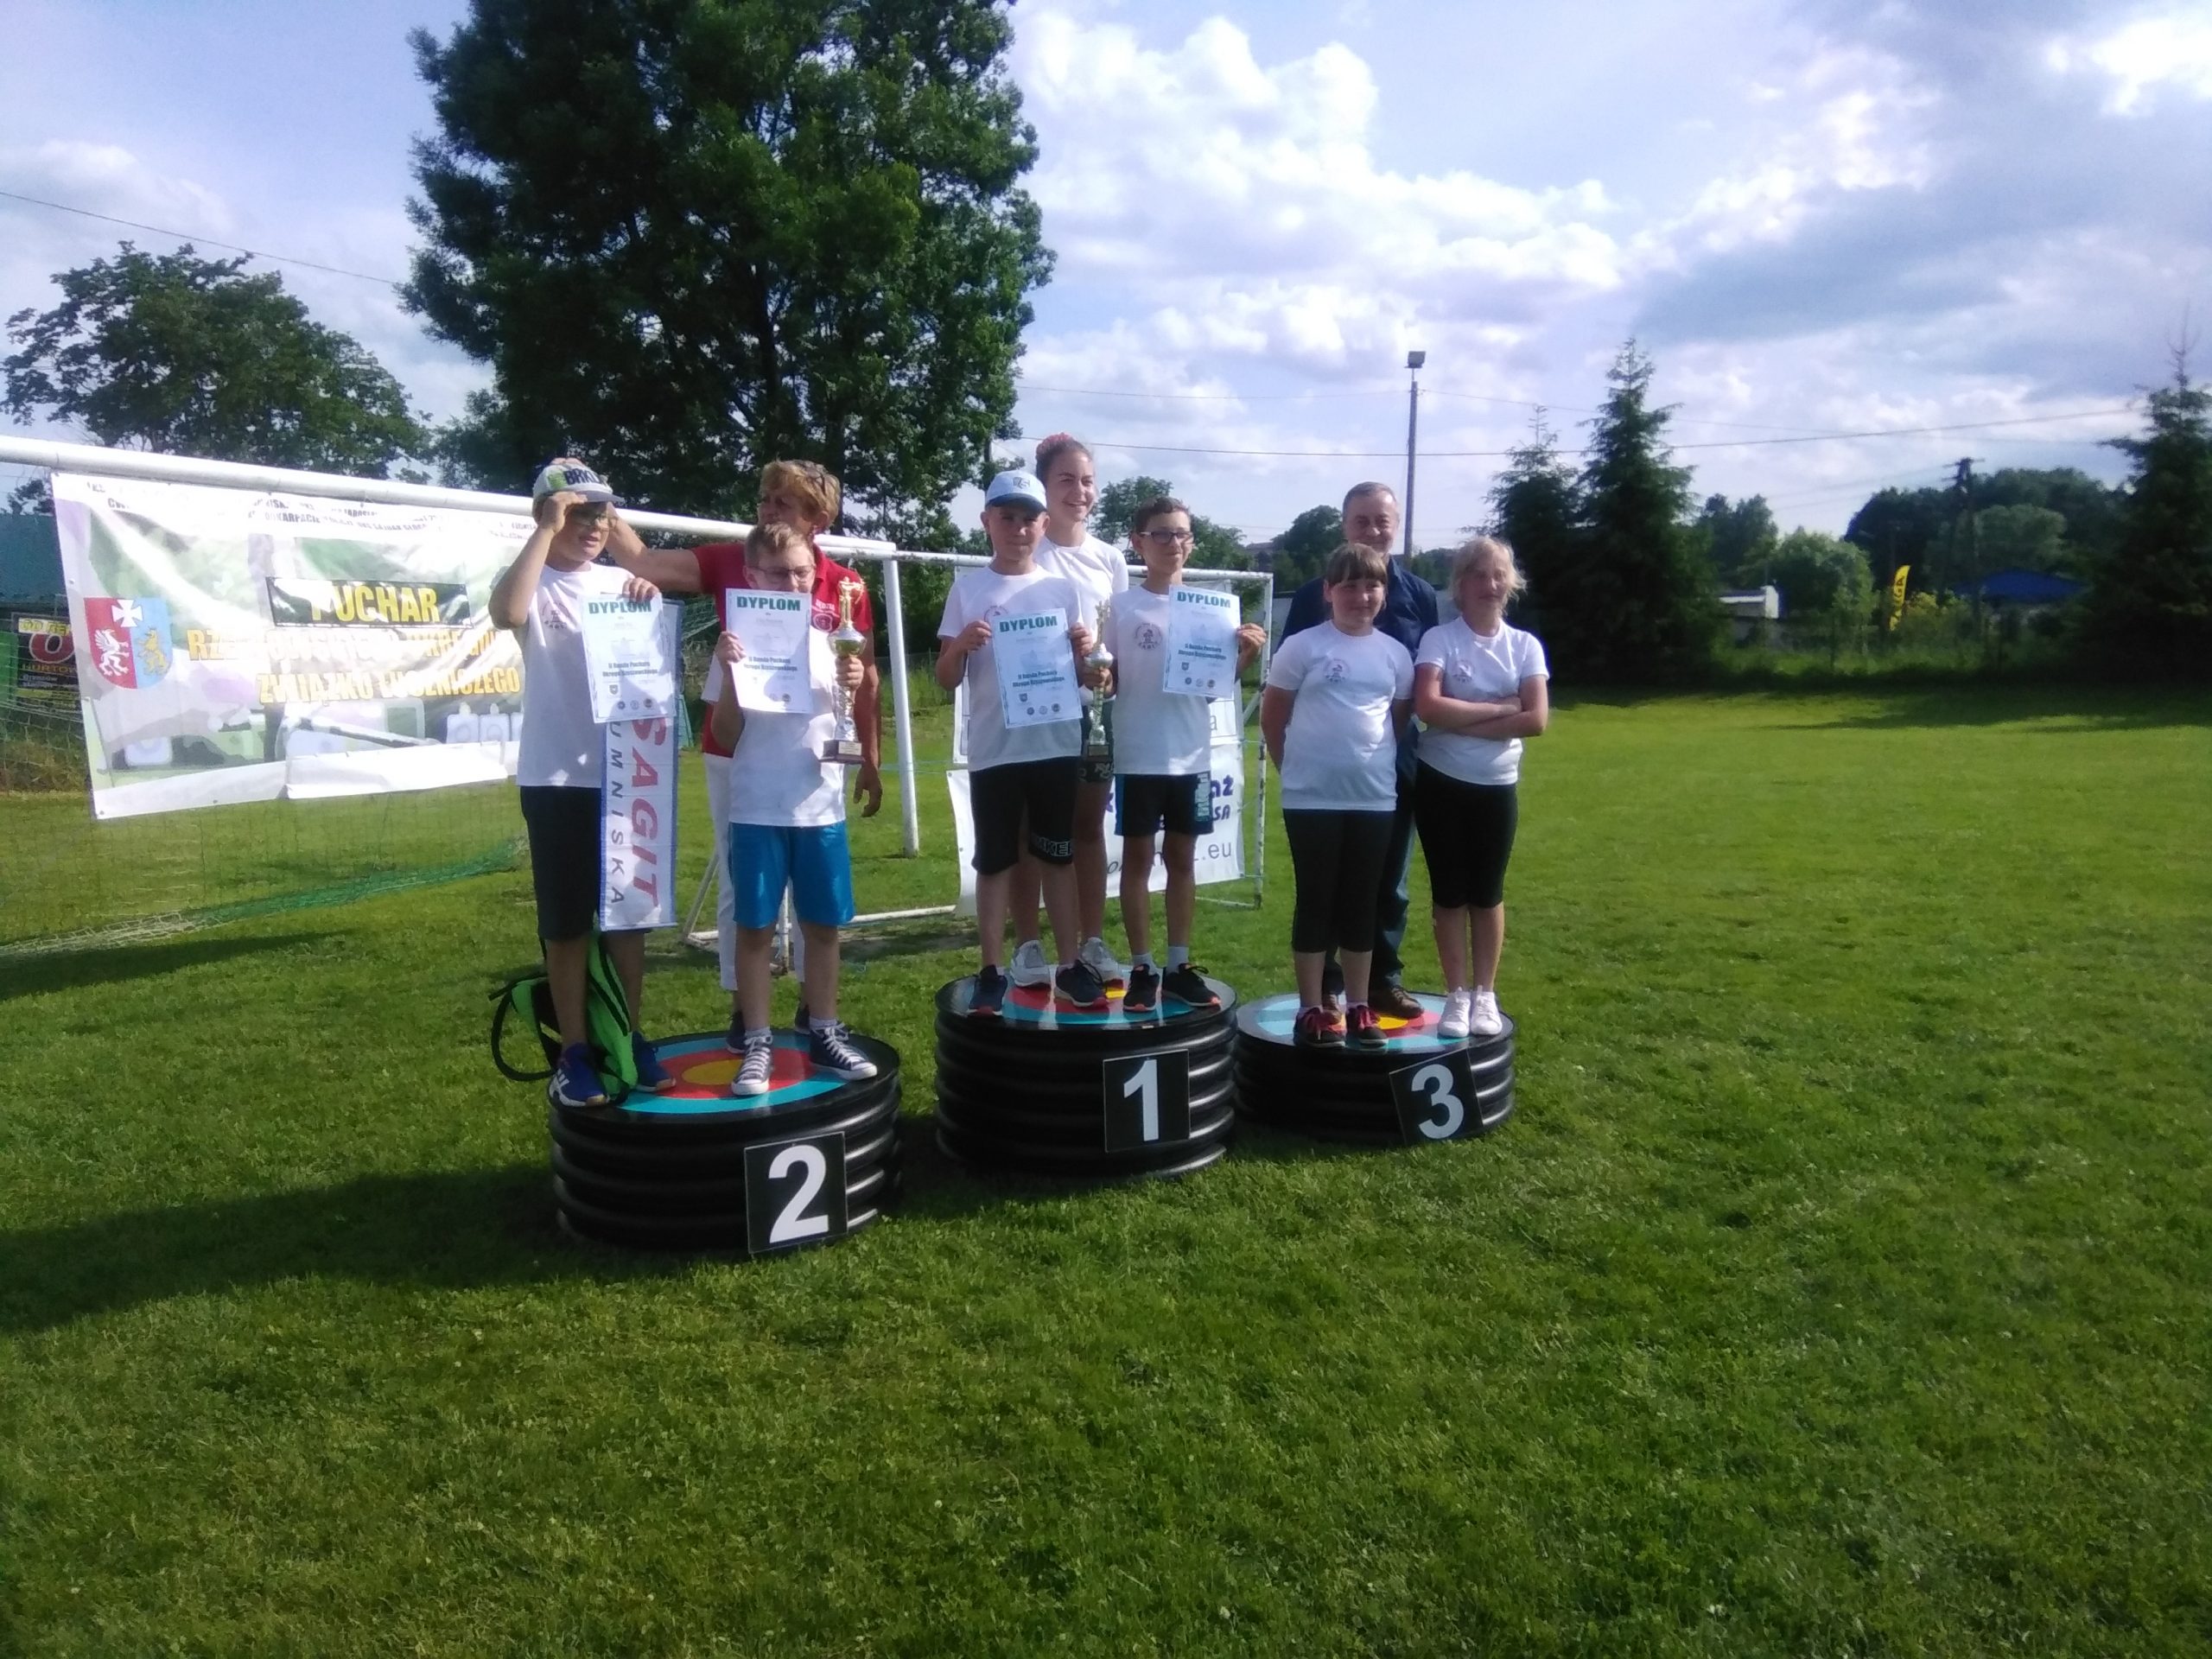 Grupa dzieci ubrana na sportowo stoi na podium z medalami na zewnątrz.